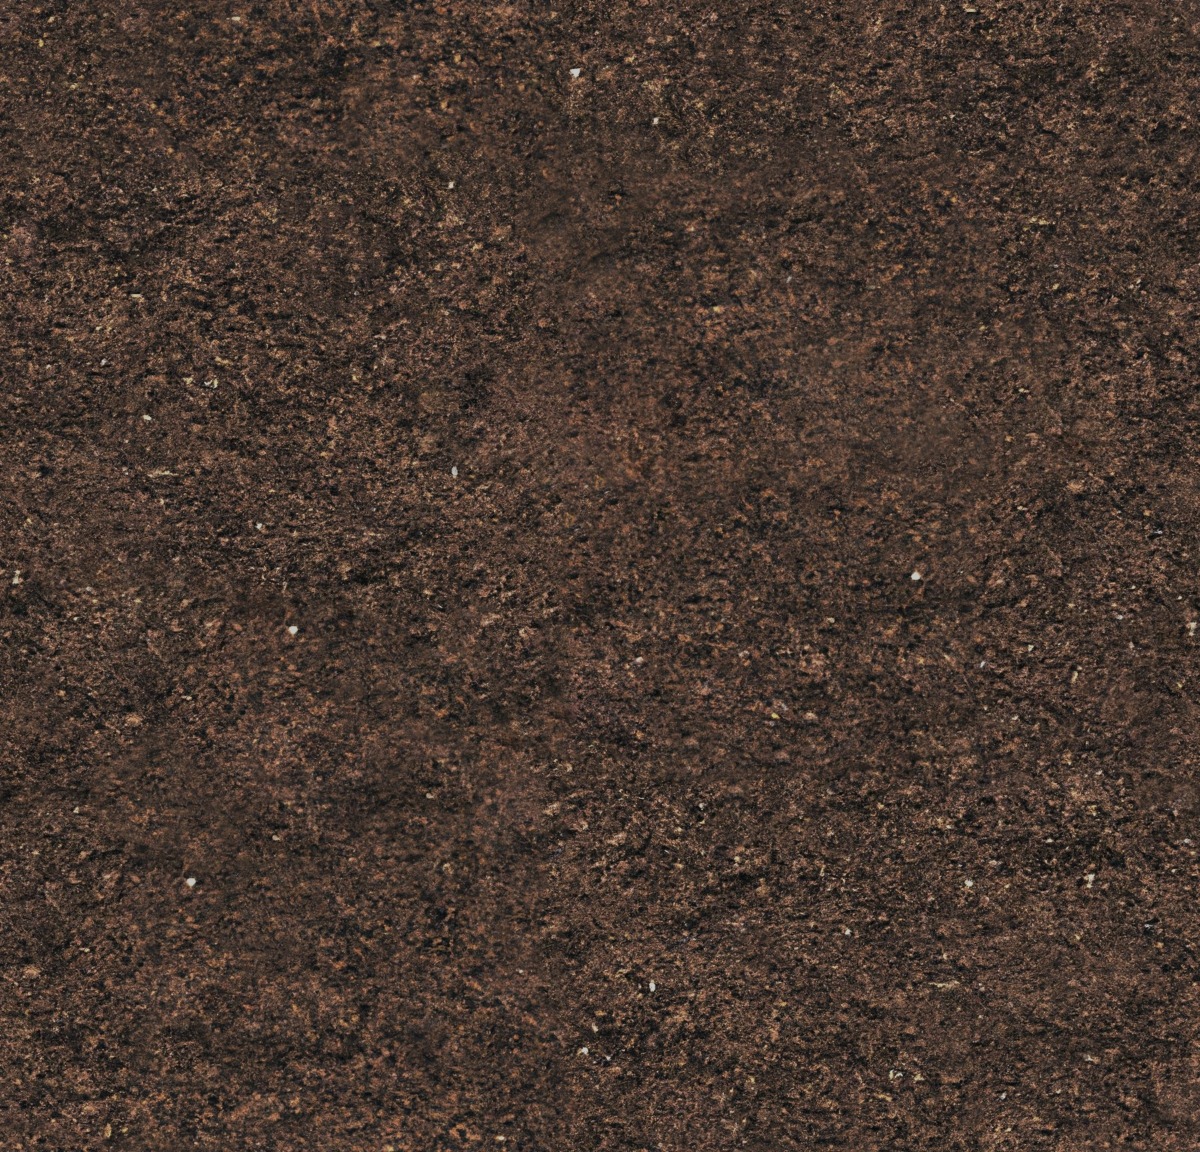 5 Free Seamless Dirt Textures (JPG)